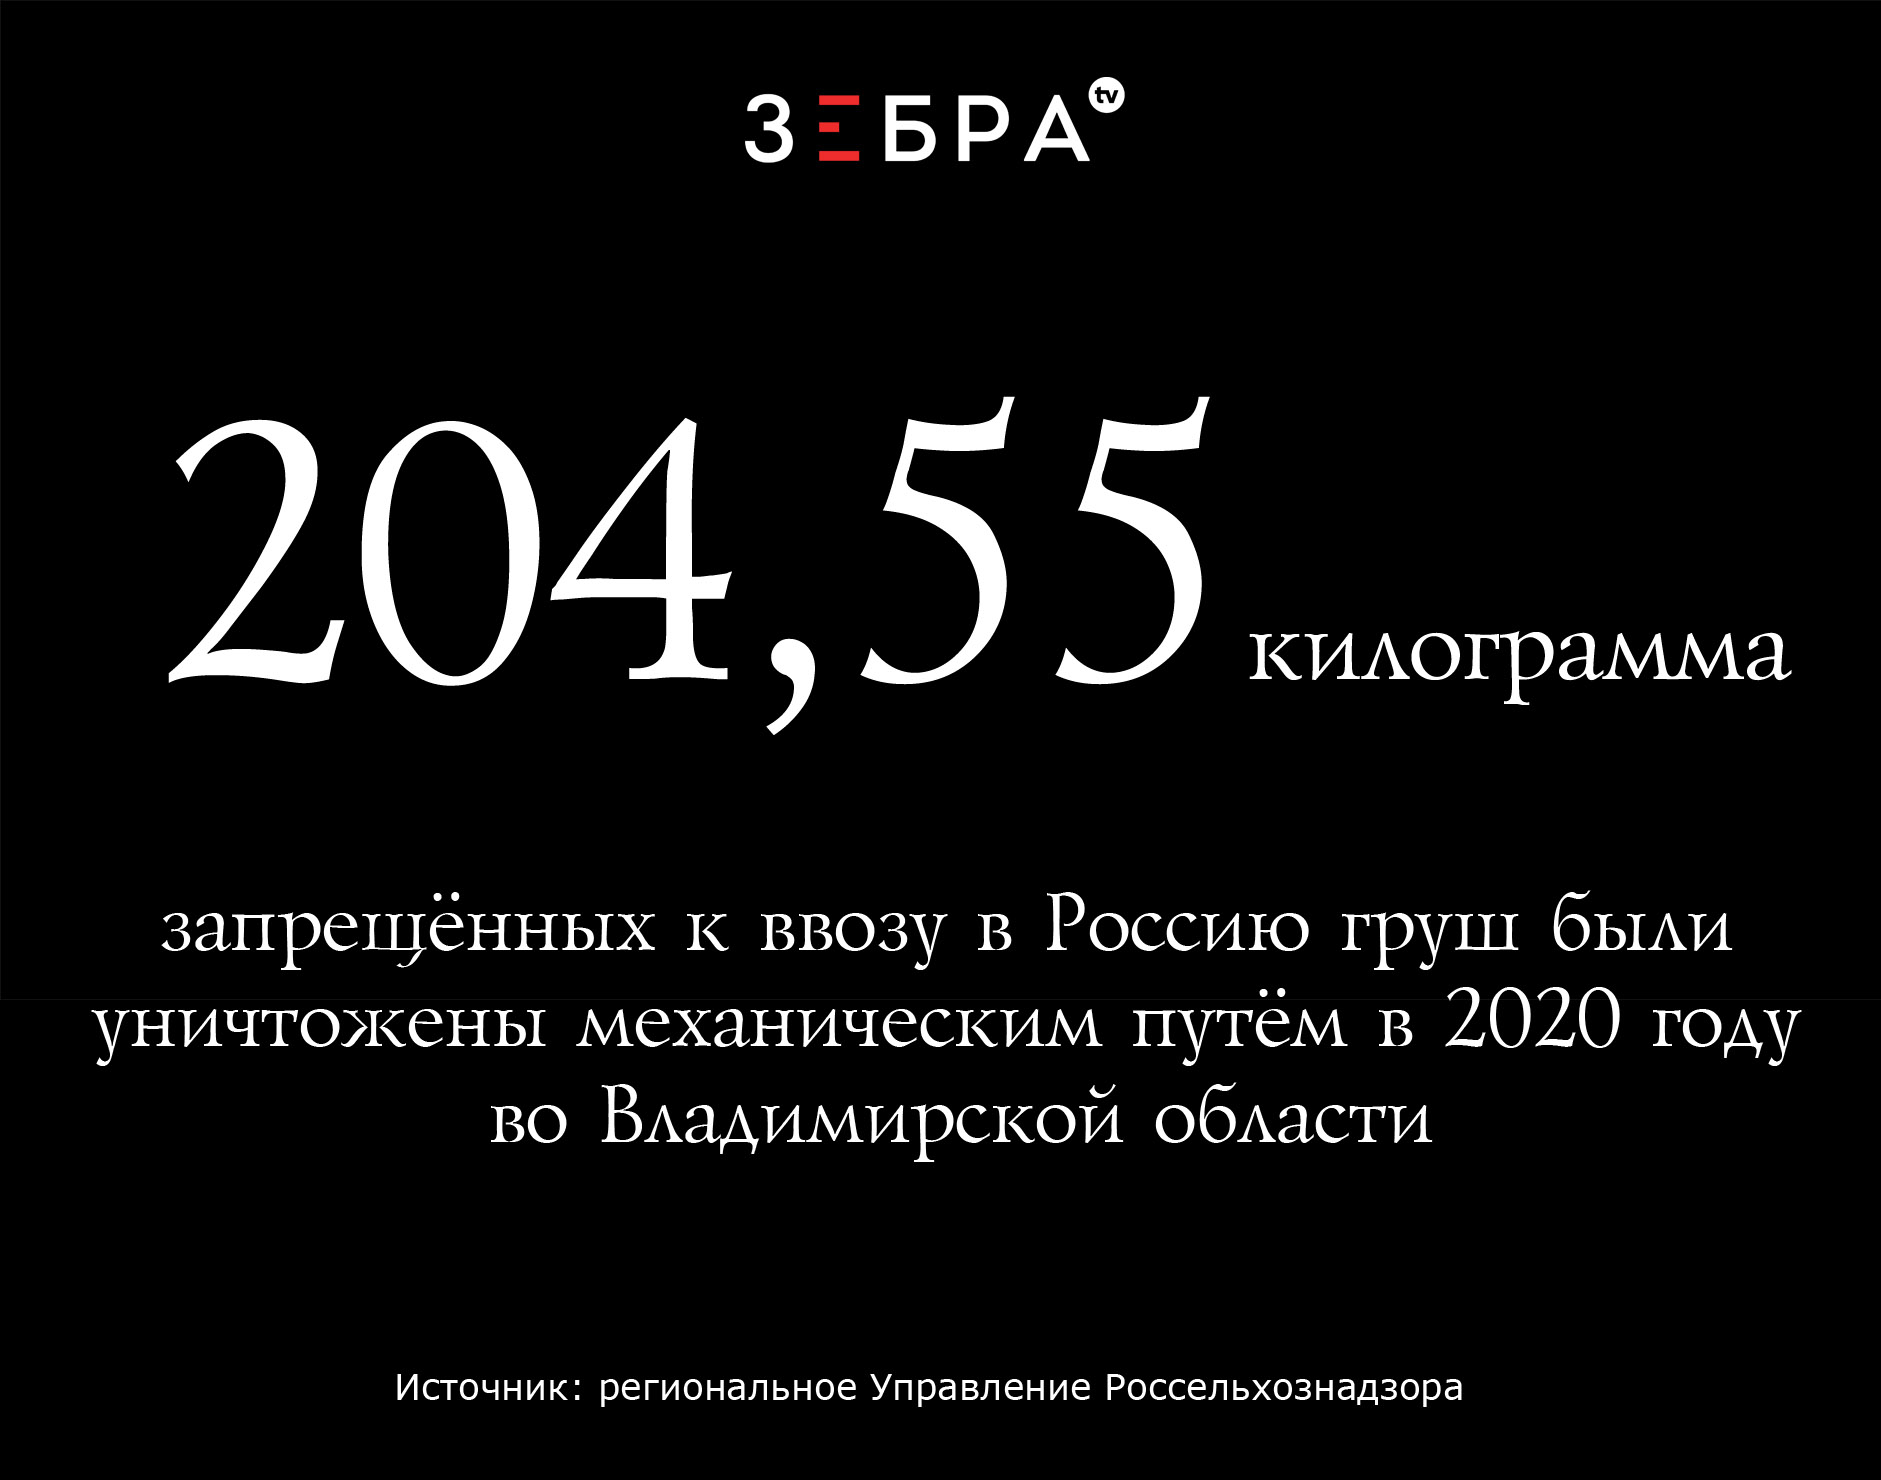 204,55 килограмма запрещённых к ввозу в Россию груш были уничтожены механическим путём в 2020 году во Владимирской области. Источник: региональное Управление Россельхознадзора